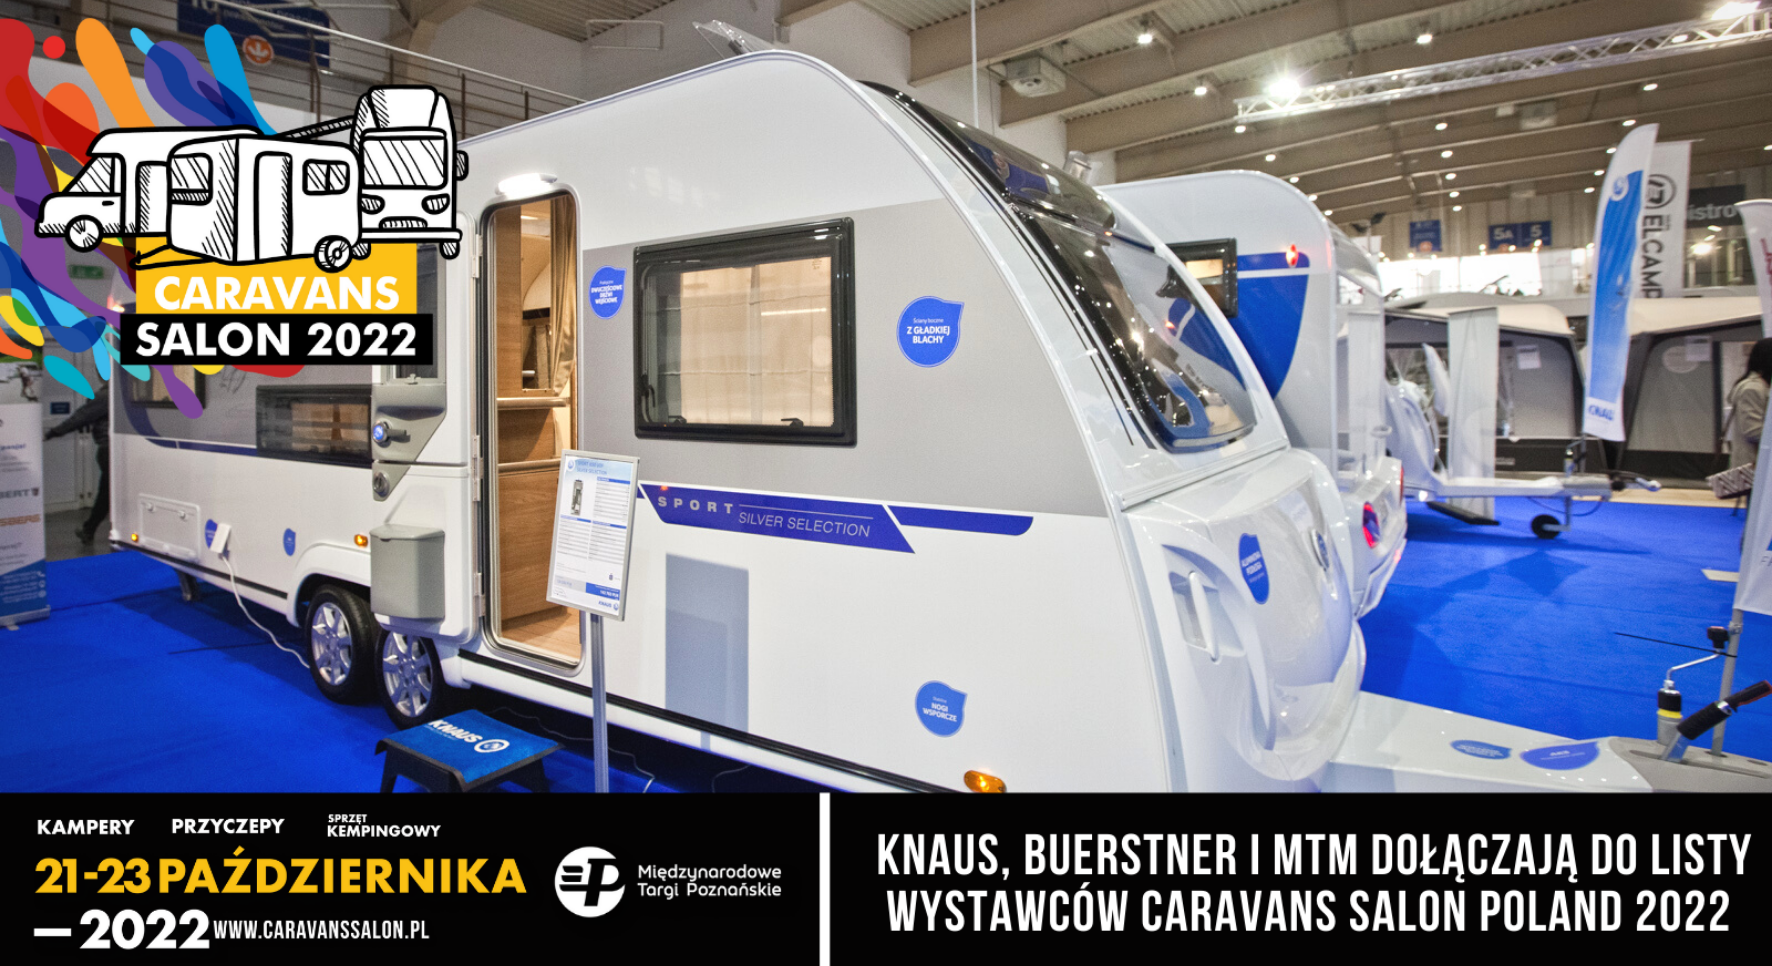 Knaus, Buerstner i MTM dołączają do listy wystawców Caravans Salon Poland 2022 w Poznaniu – główne zdjęcie